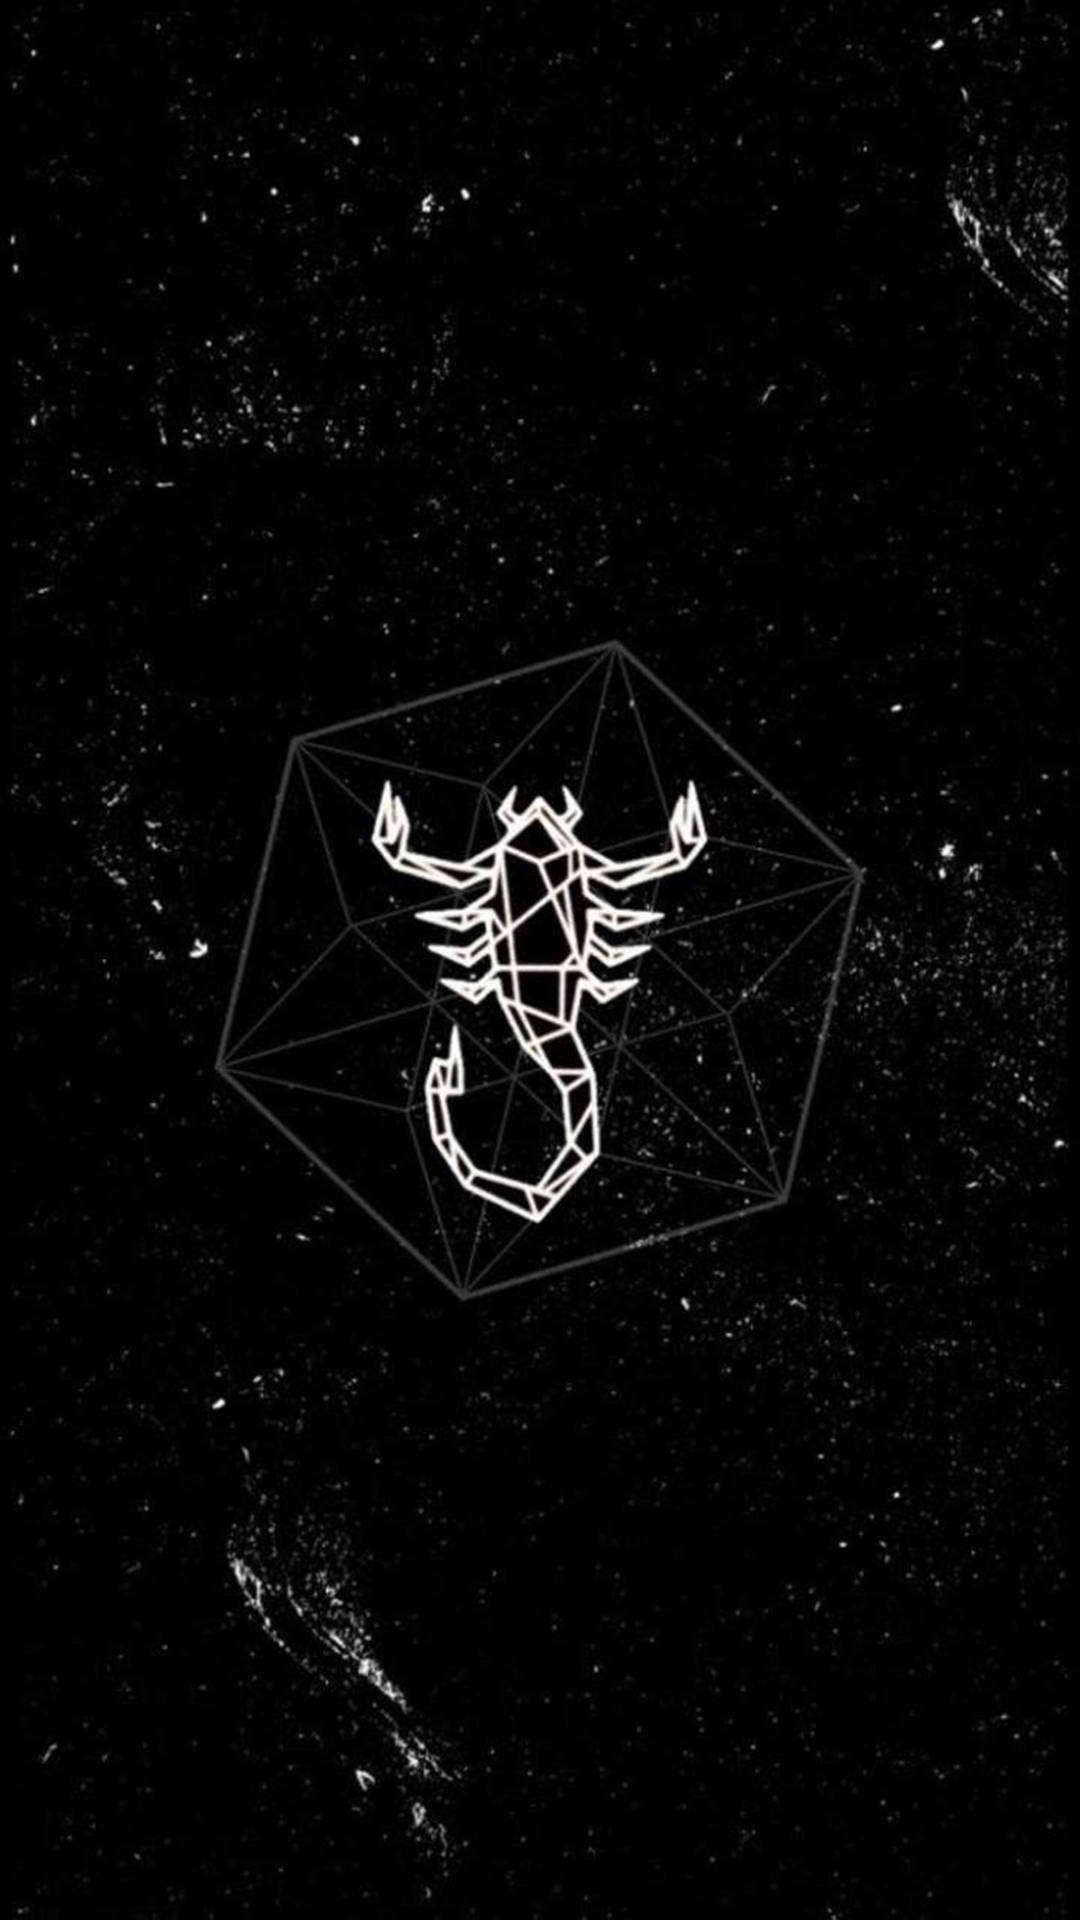 Geometric scorpion in a cube - Scorpio